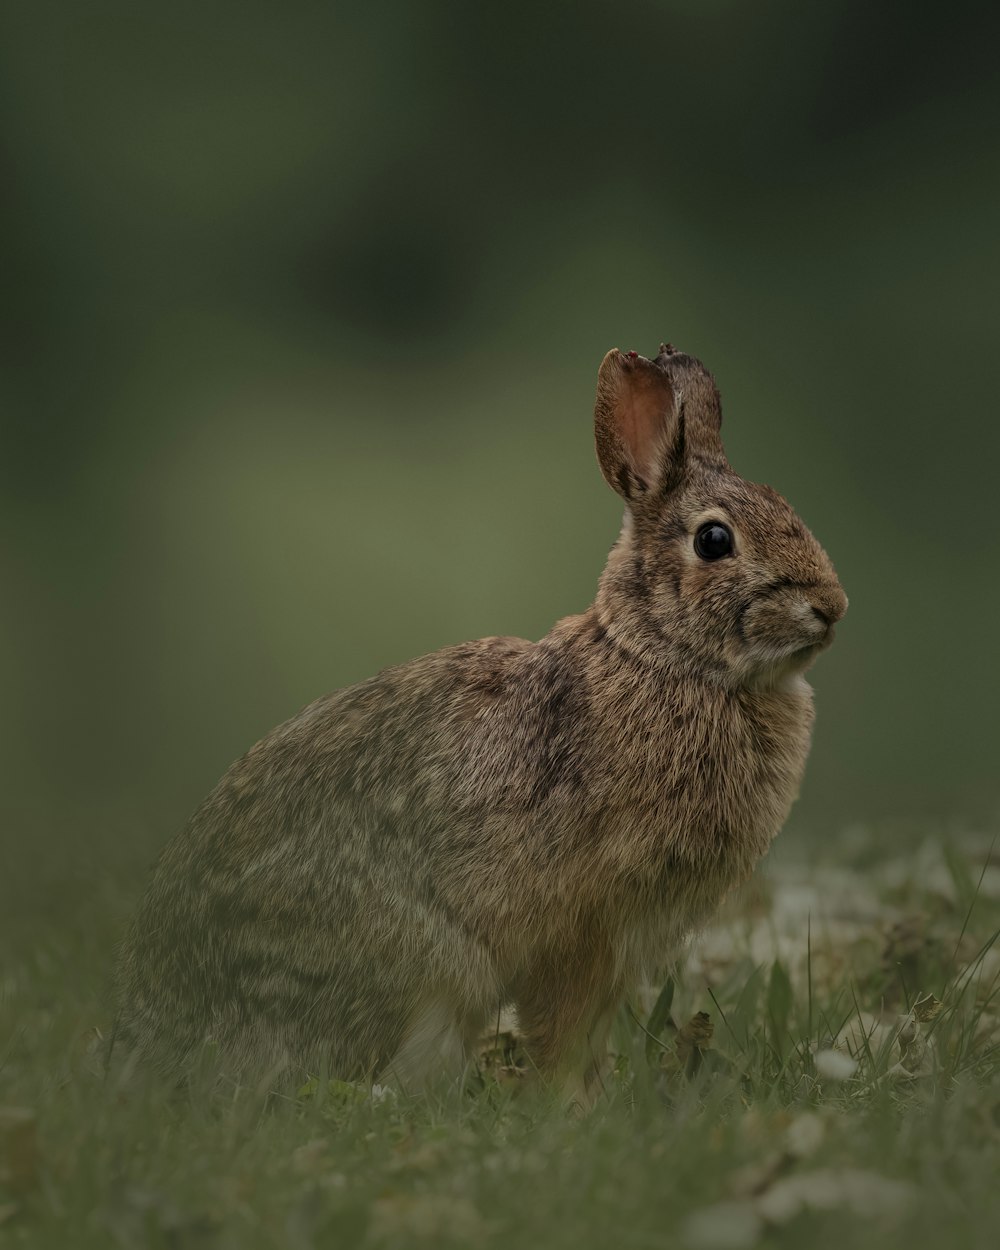 a brown rabbit standing on grass